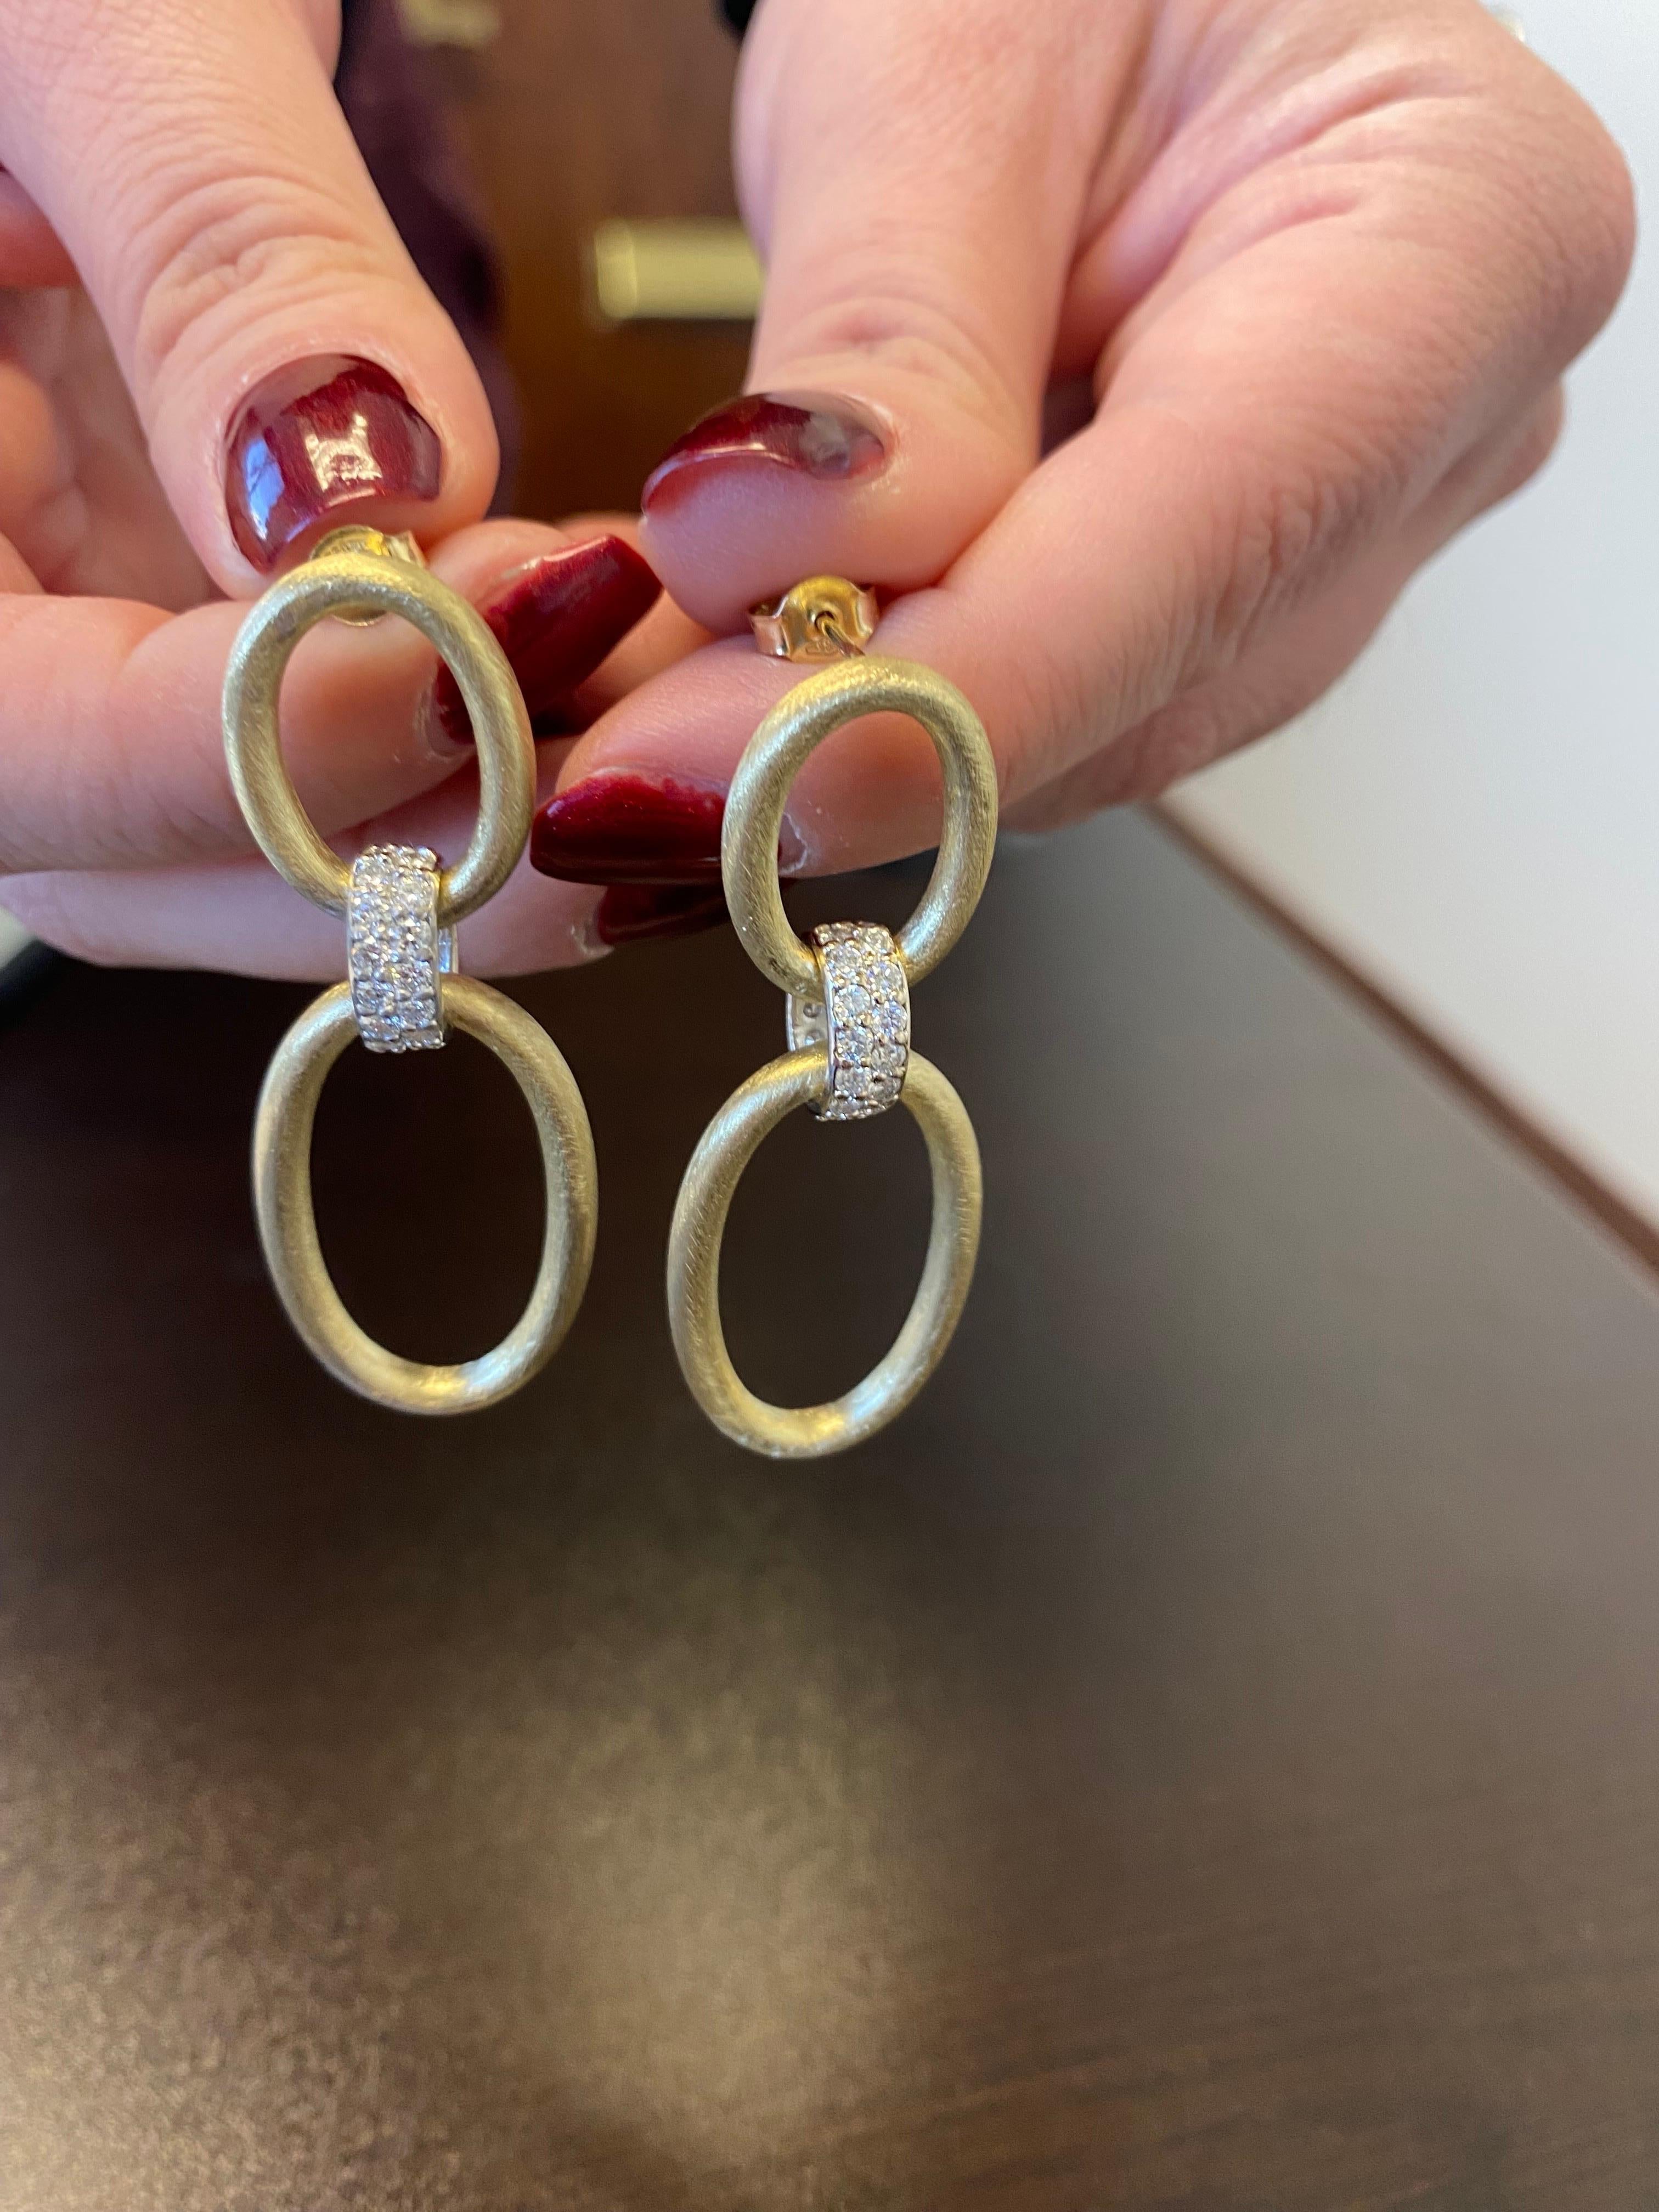 Diamantene Ohrringe in 14K Gelb- und Weißgold 2-Ton gefasst. Die Ohrringe sind aus mattem Gelbgold gefertigt. Das Gesamtkaratgewicht beträgt 1,50. Die Farbe der Steine ist G, die Reinheit ist SI1-SI2. Die Ohrringe werden in Italien hergestellt.